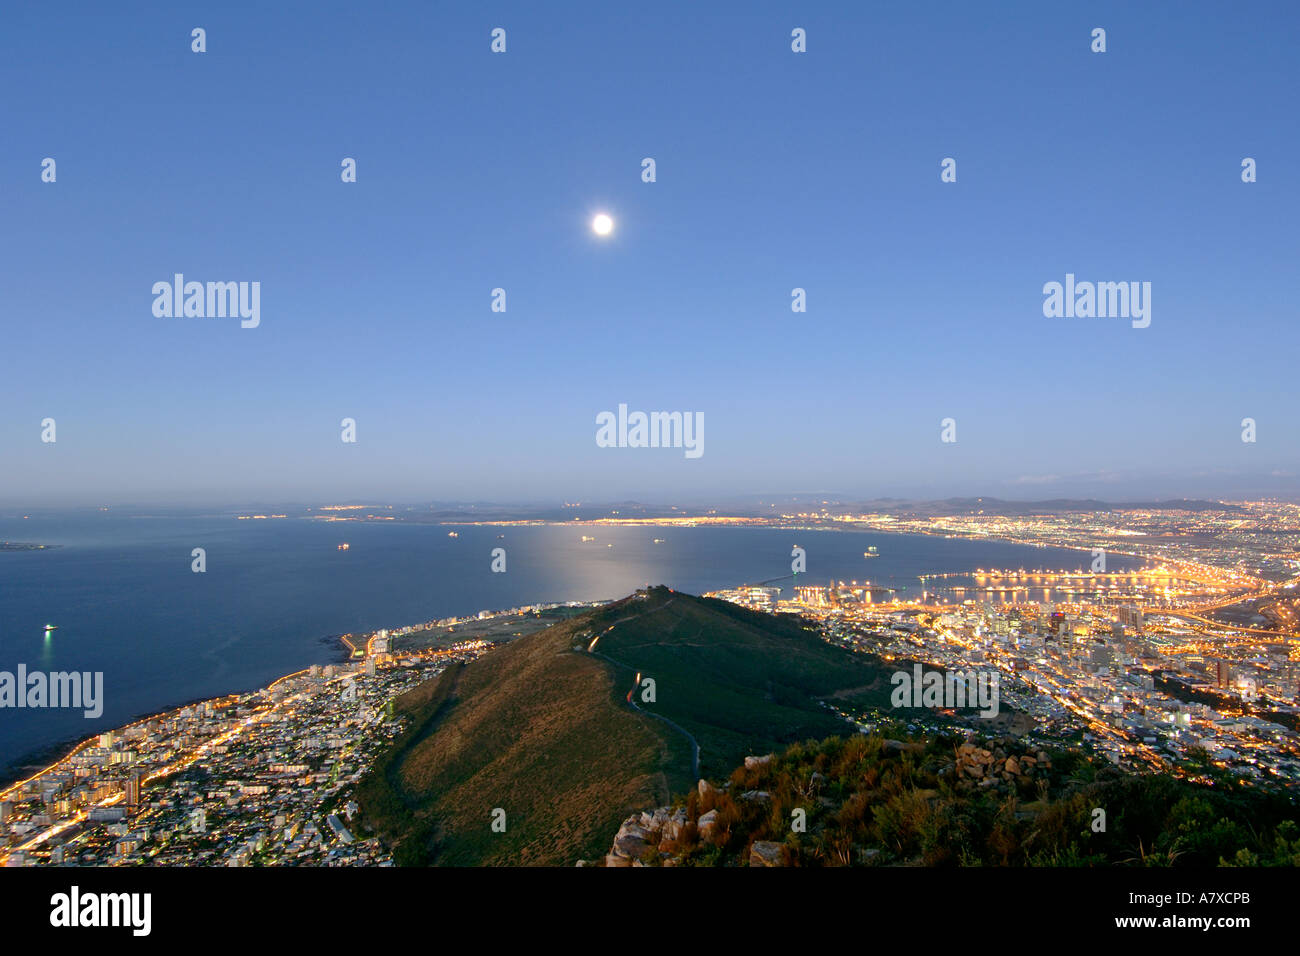 Vista della città di Cape Town Signal Hill e la luna dal vertice della testa di leone al tramonto. La luna piena è visibile. Foto Stock